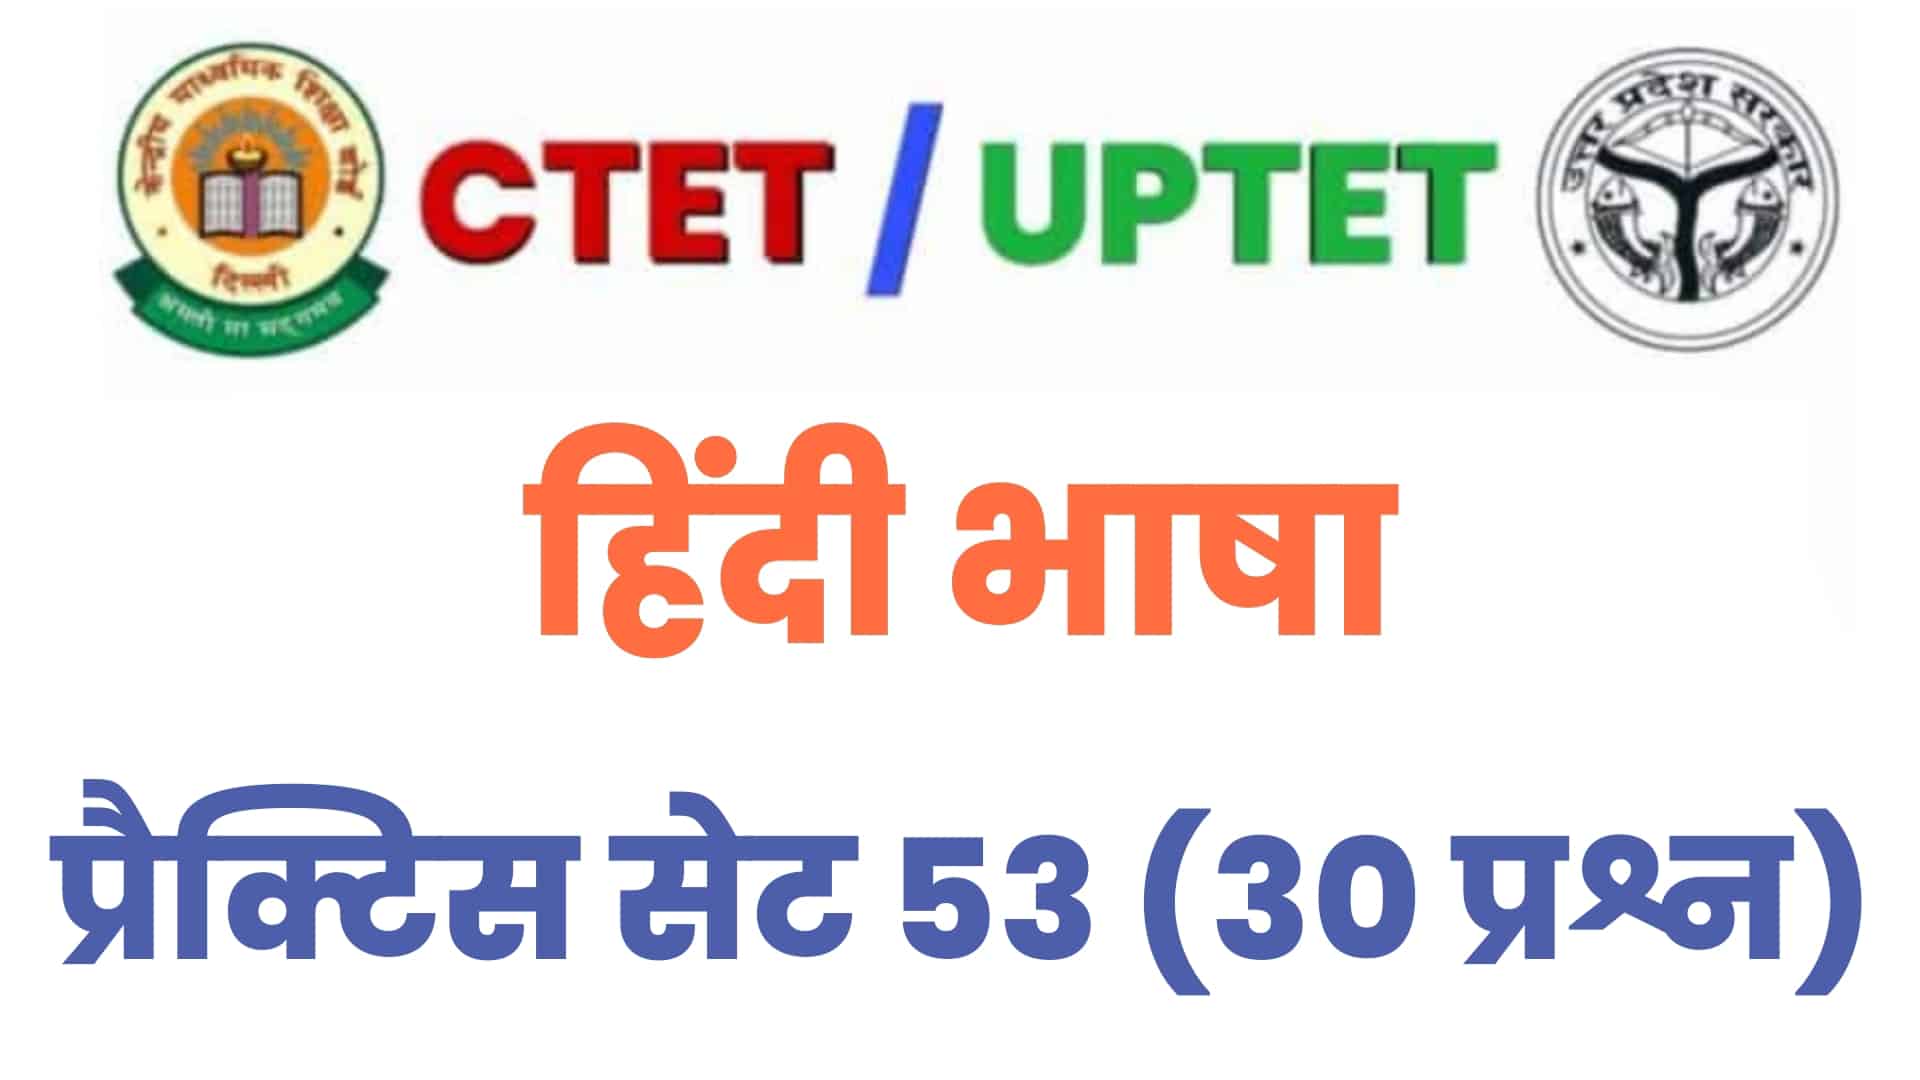 UPTET/CTET हिंदी भाषा प्रैक्टिस सेट 53 : परीक्षा में जानें से पहले विगत वर्षों के इन 30 महत्वपूर्ण प्रश्नों का करें अध्ययन